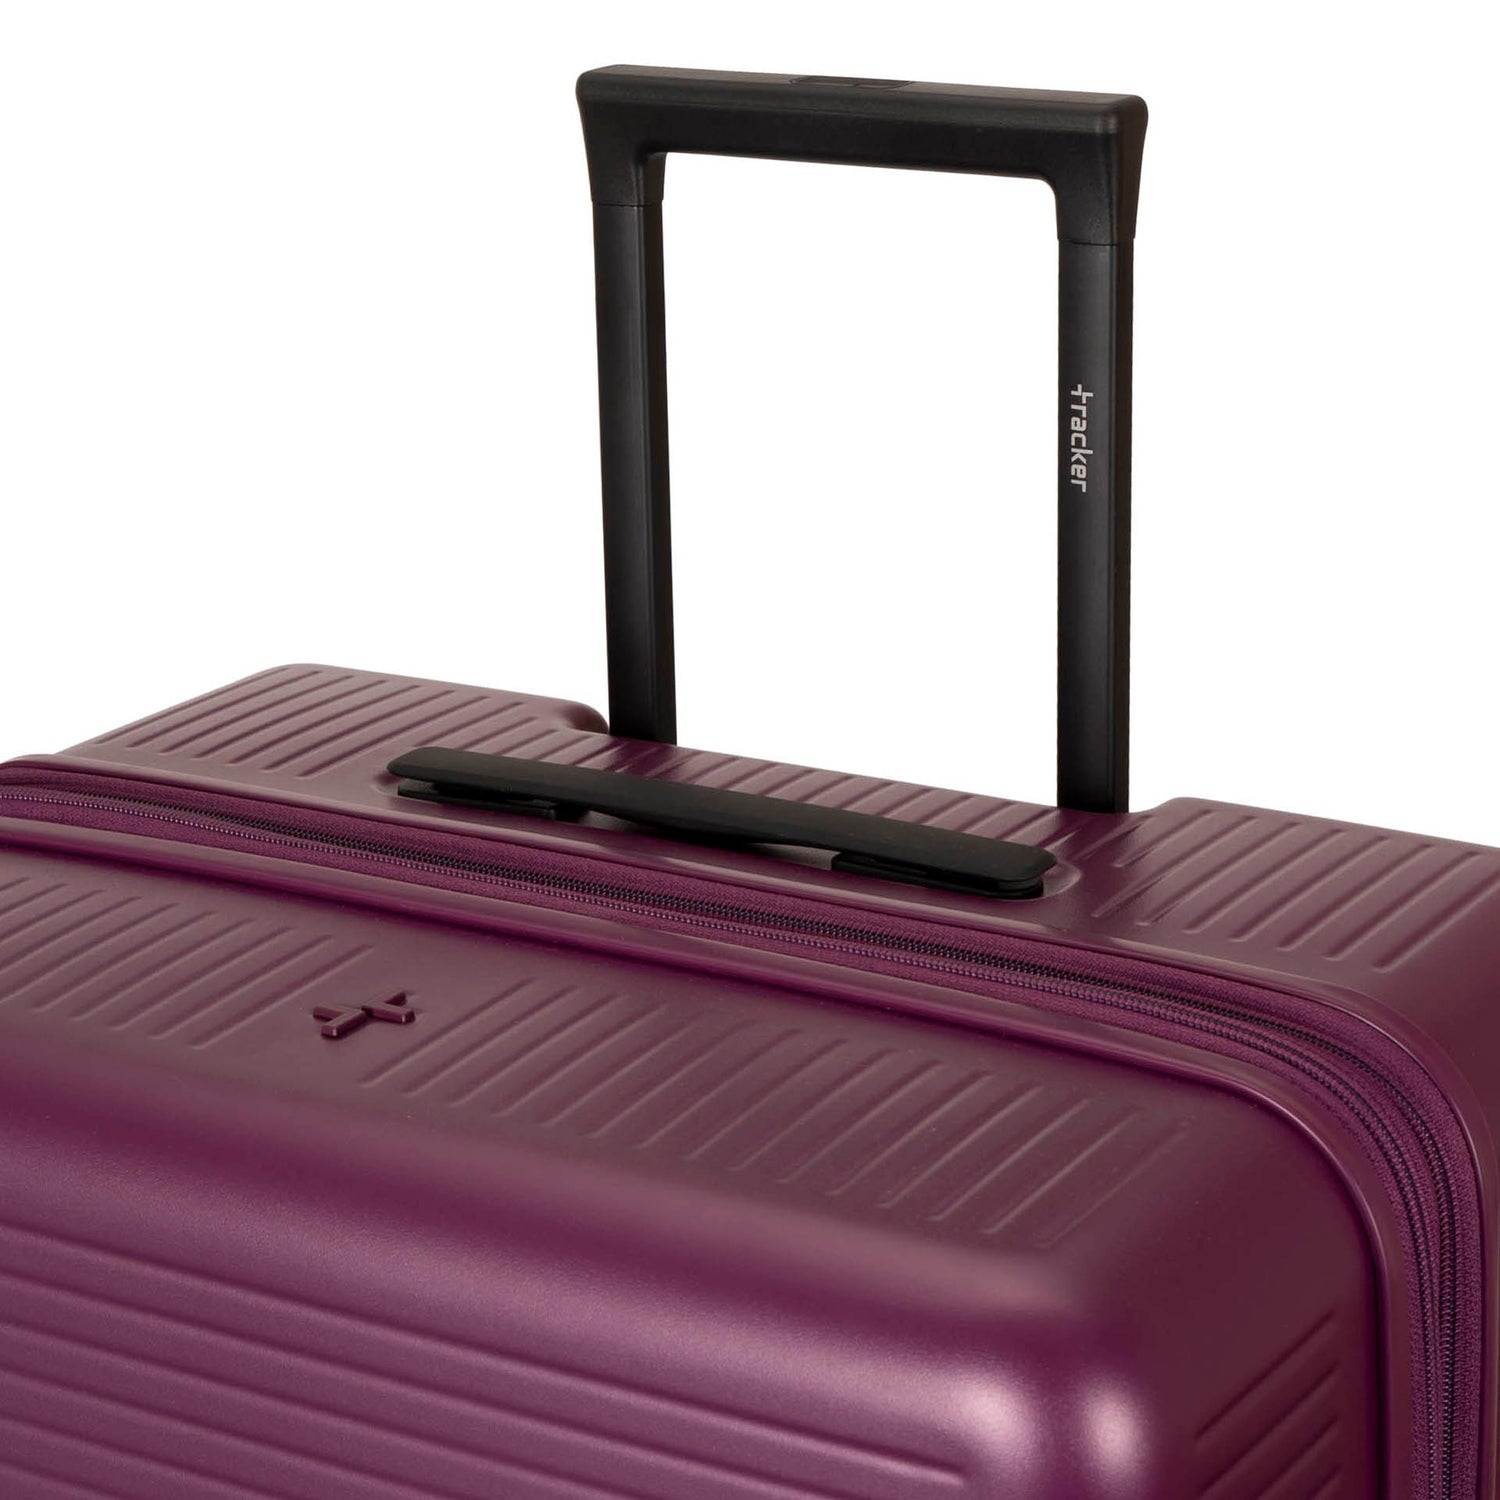 Westmount Hardside 30" Luggage -  - 

        Tracker
      
